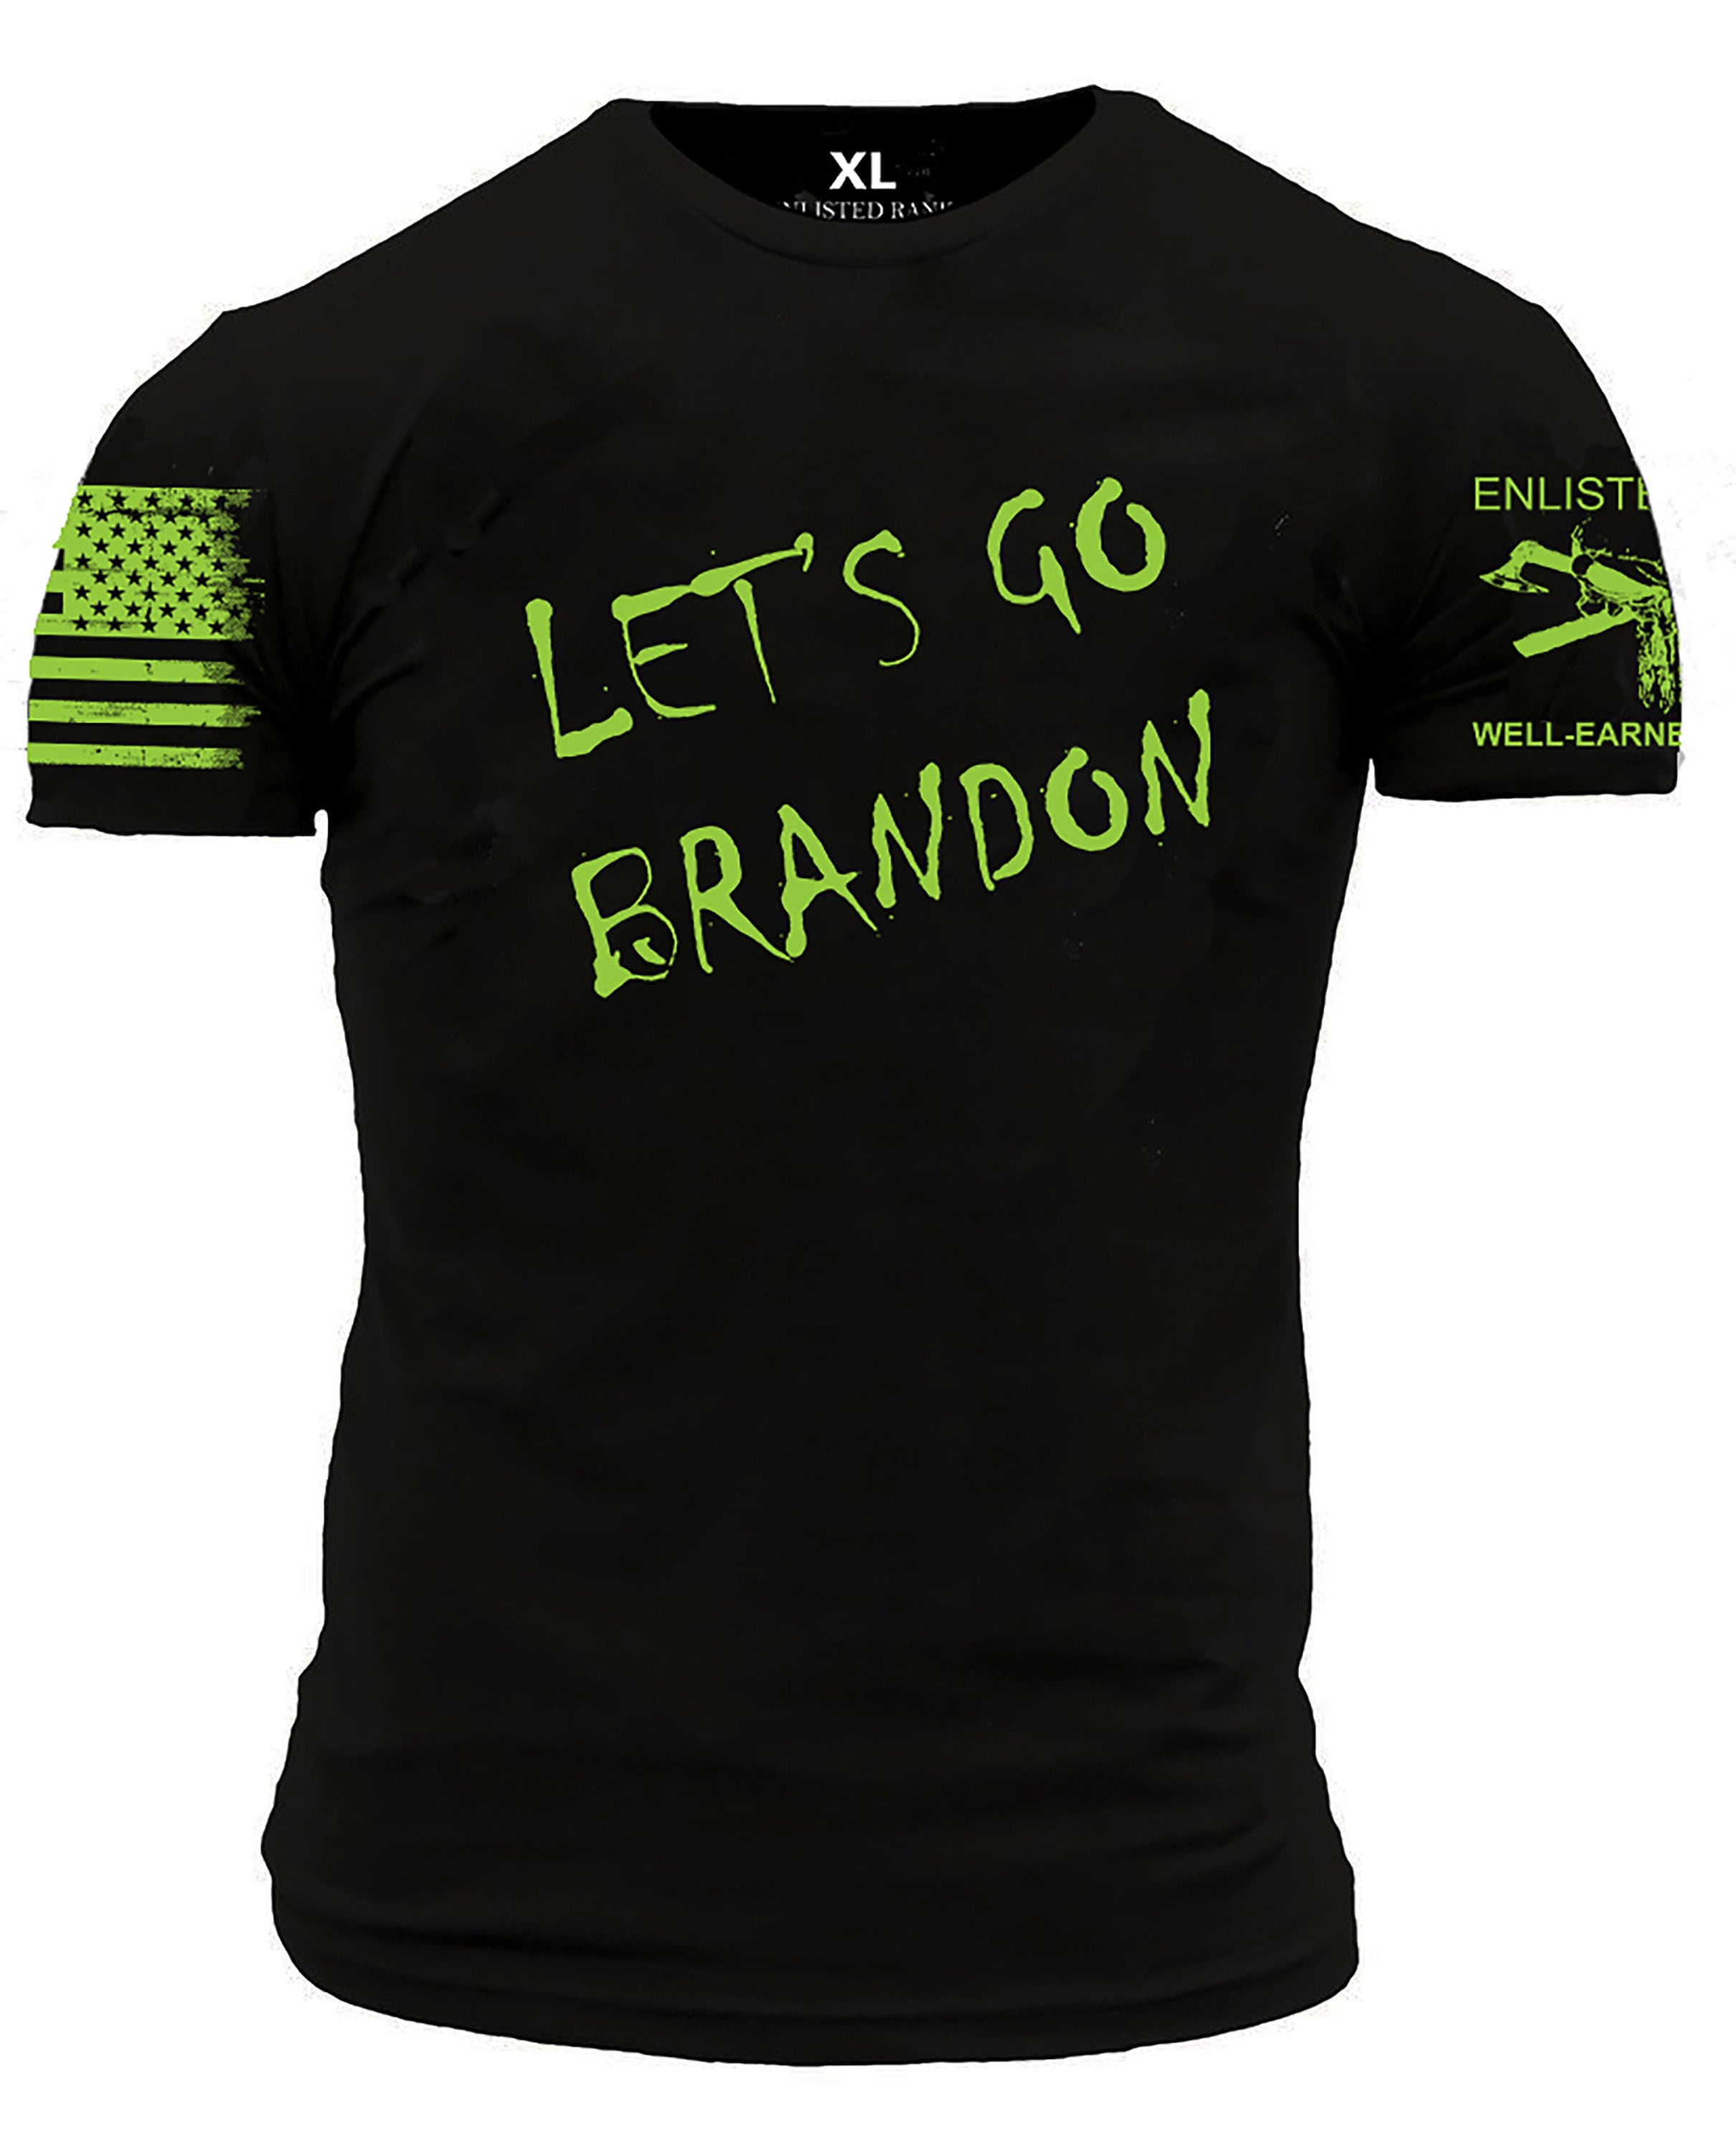 Colion Noir - Get 20% off “Let's Go Brandon” Hats, shirts